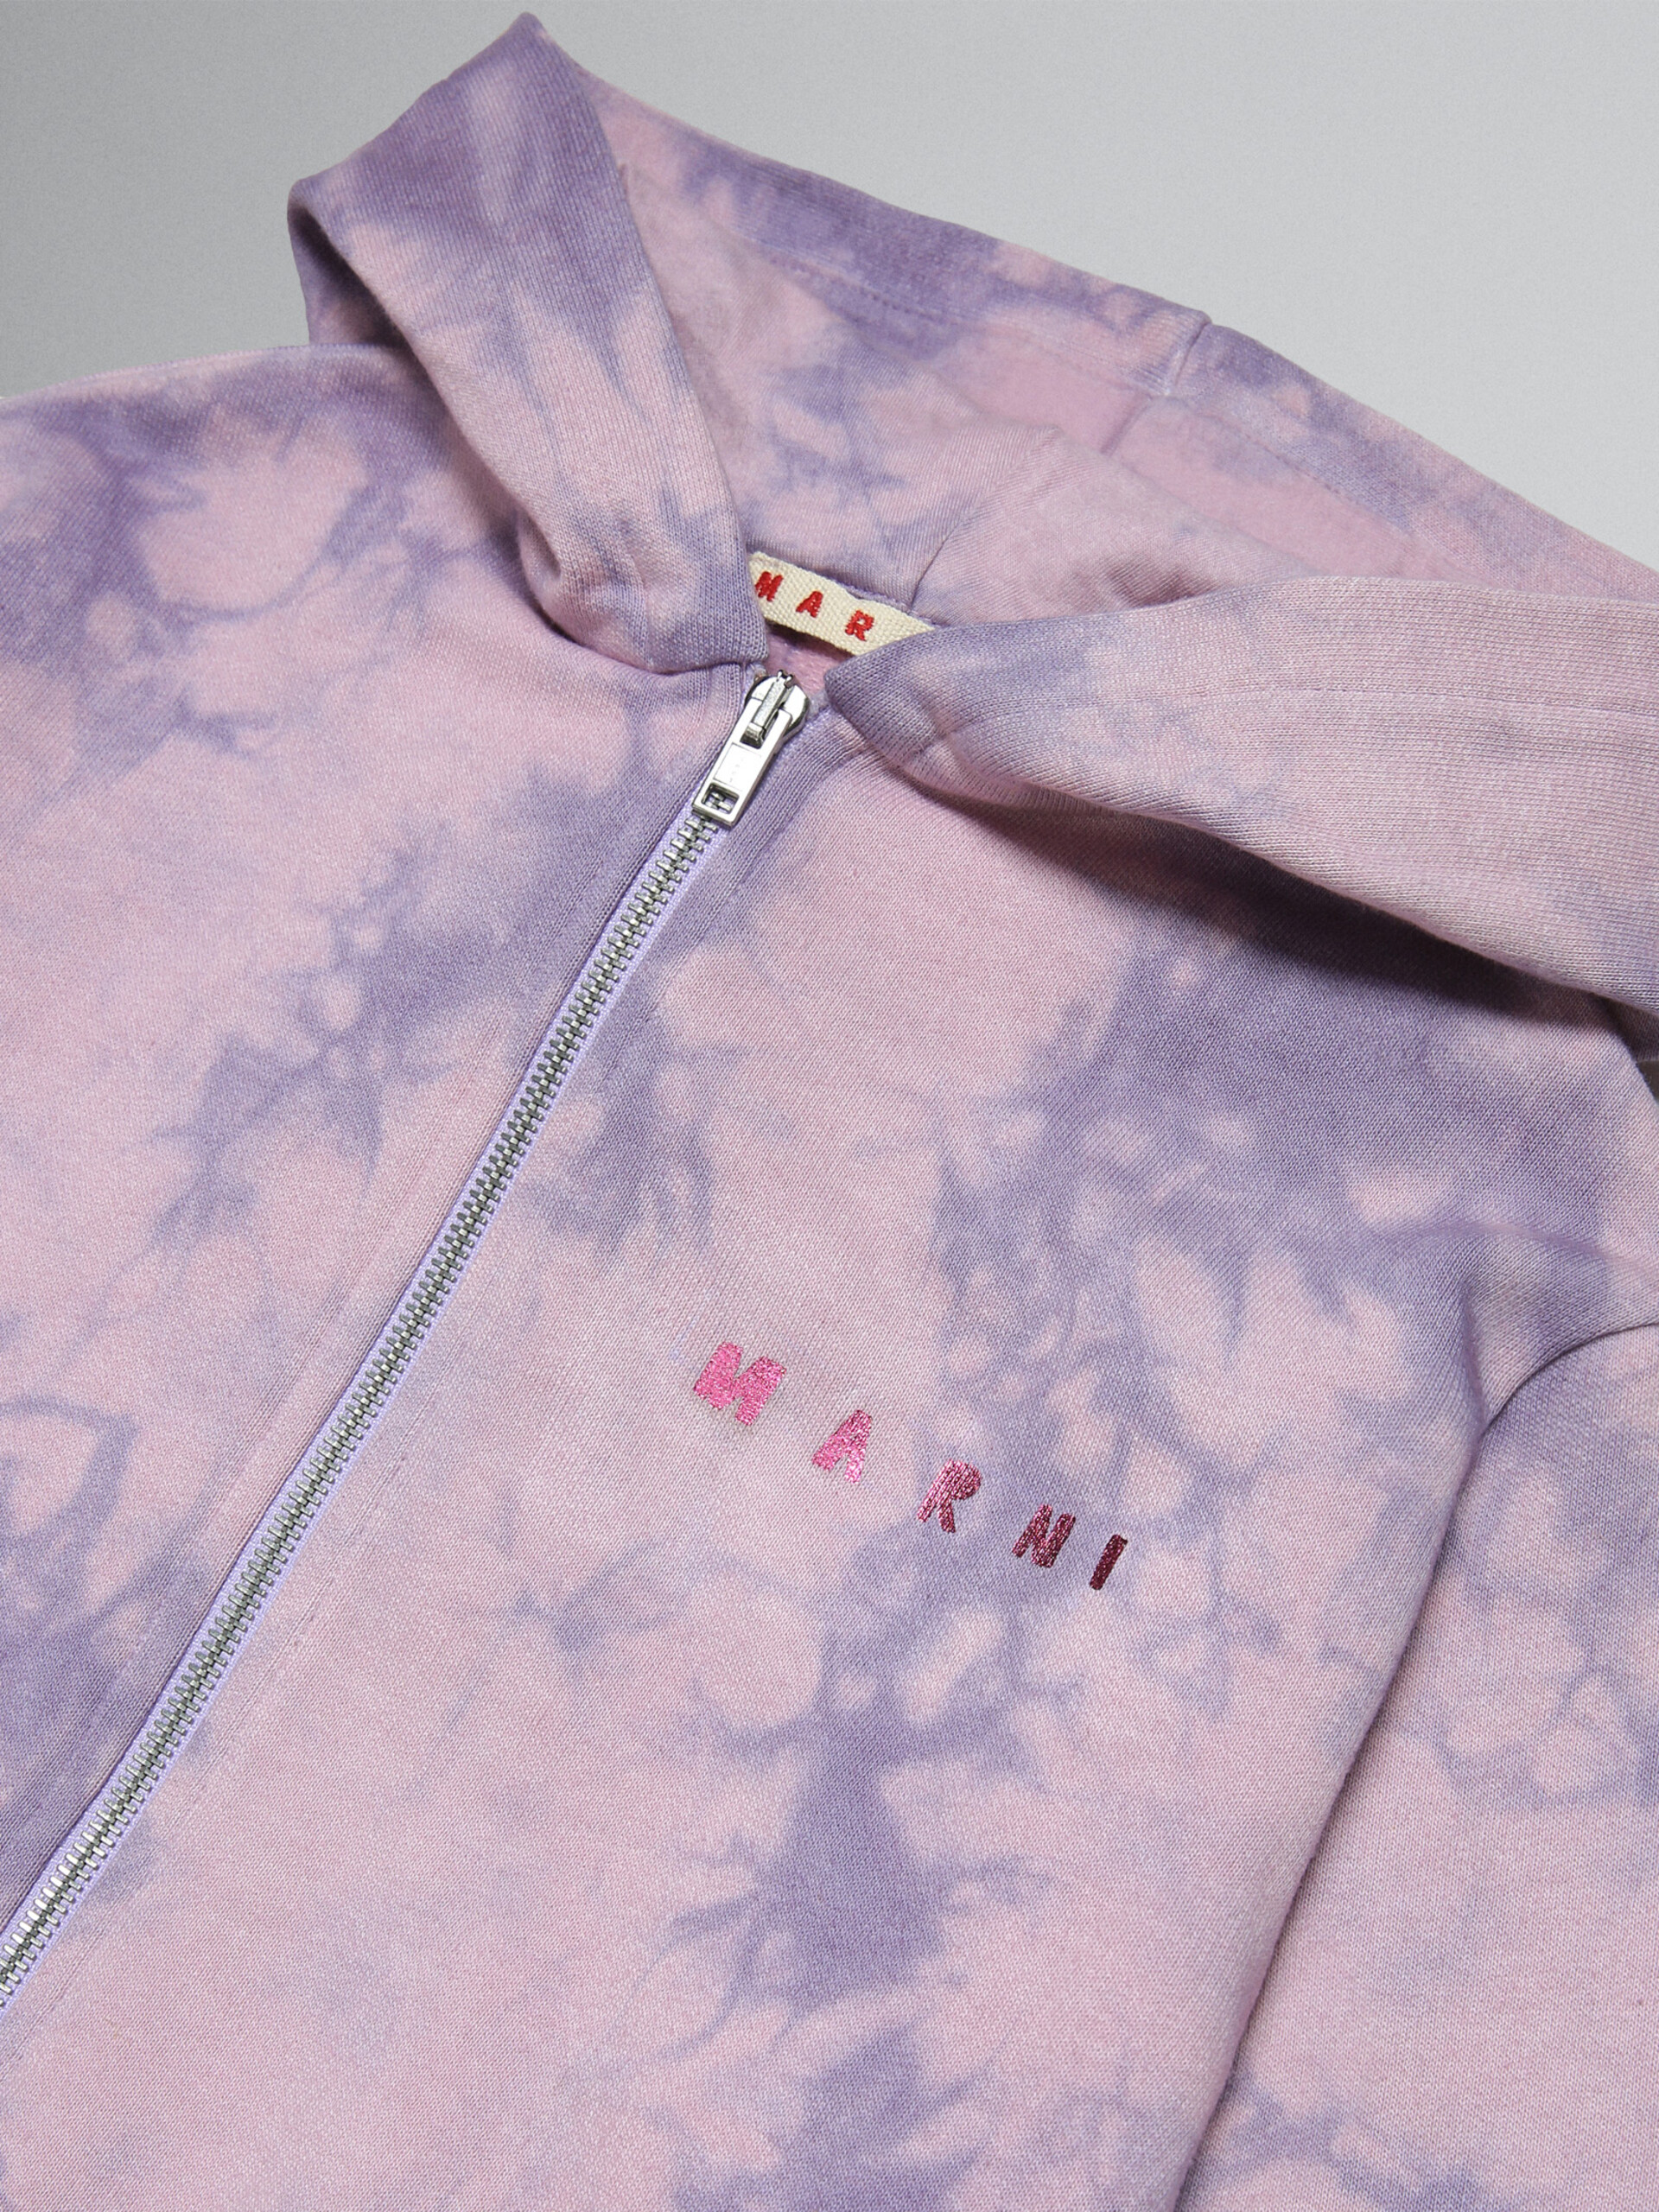 Lavender tie-dye hoodie with metallic logo prints - Sweaters - Image 3